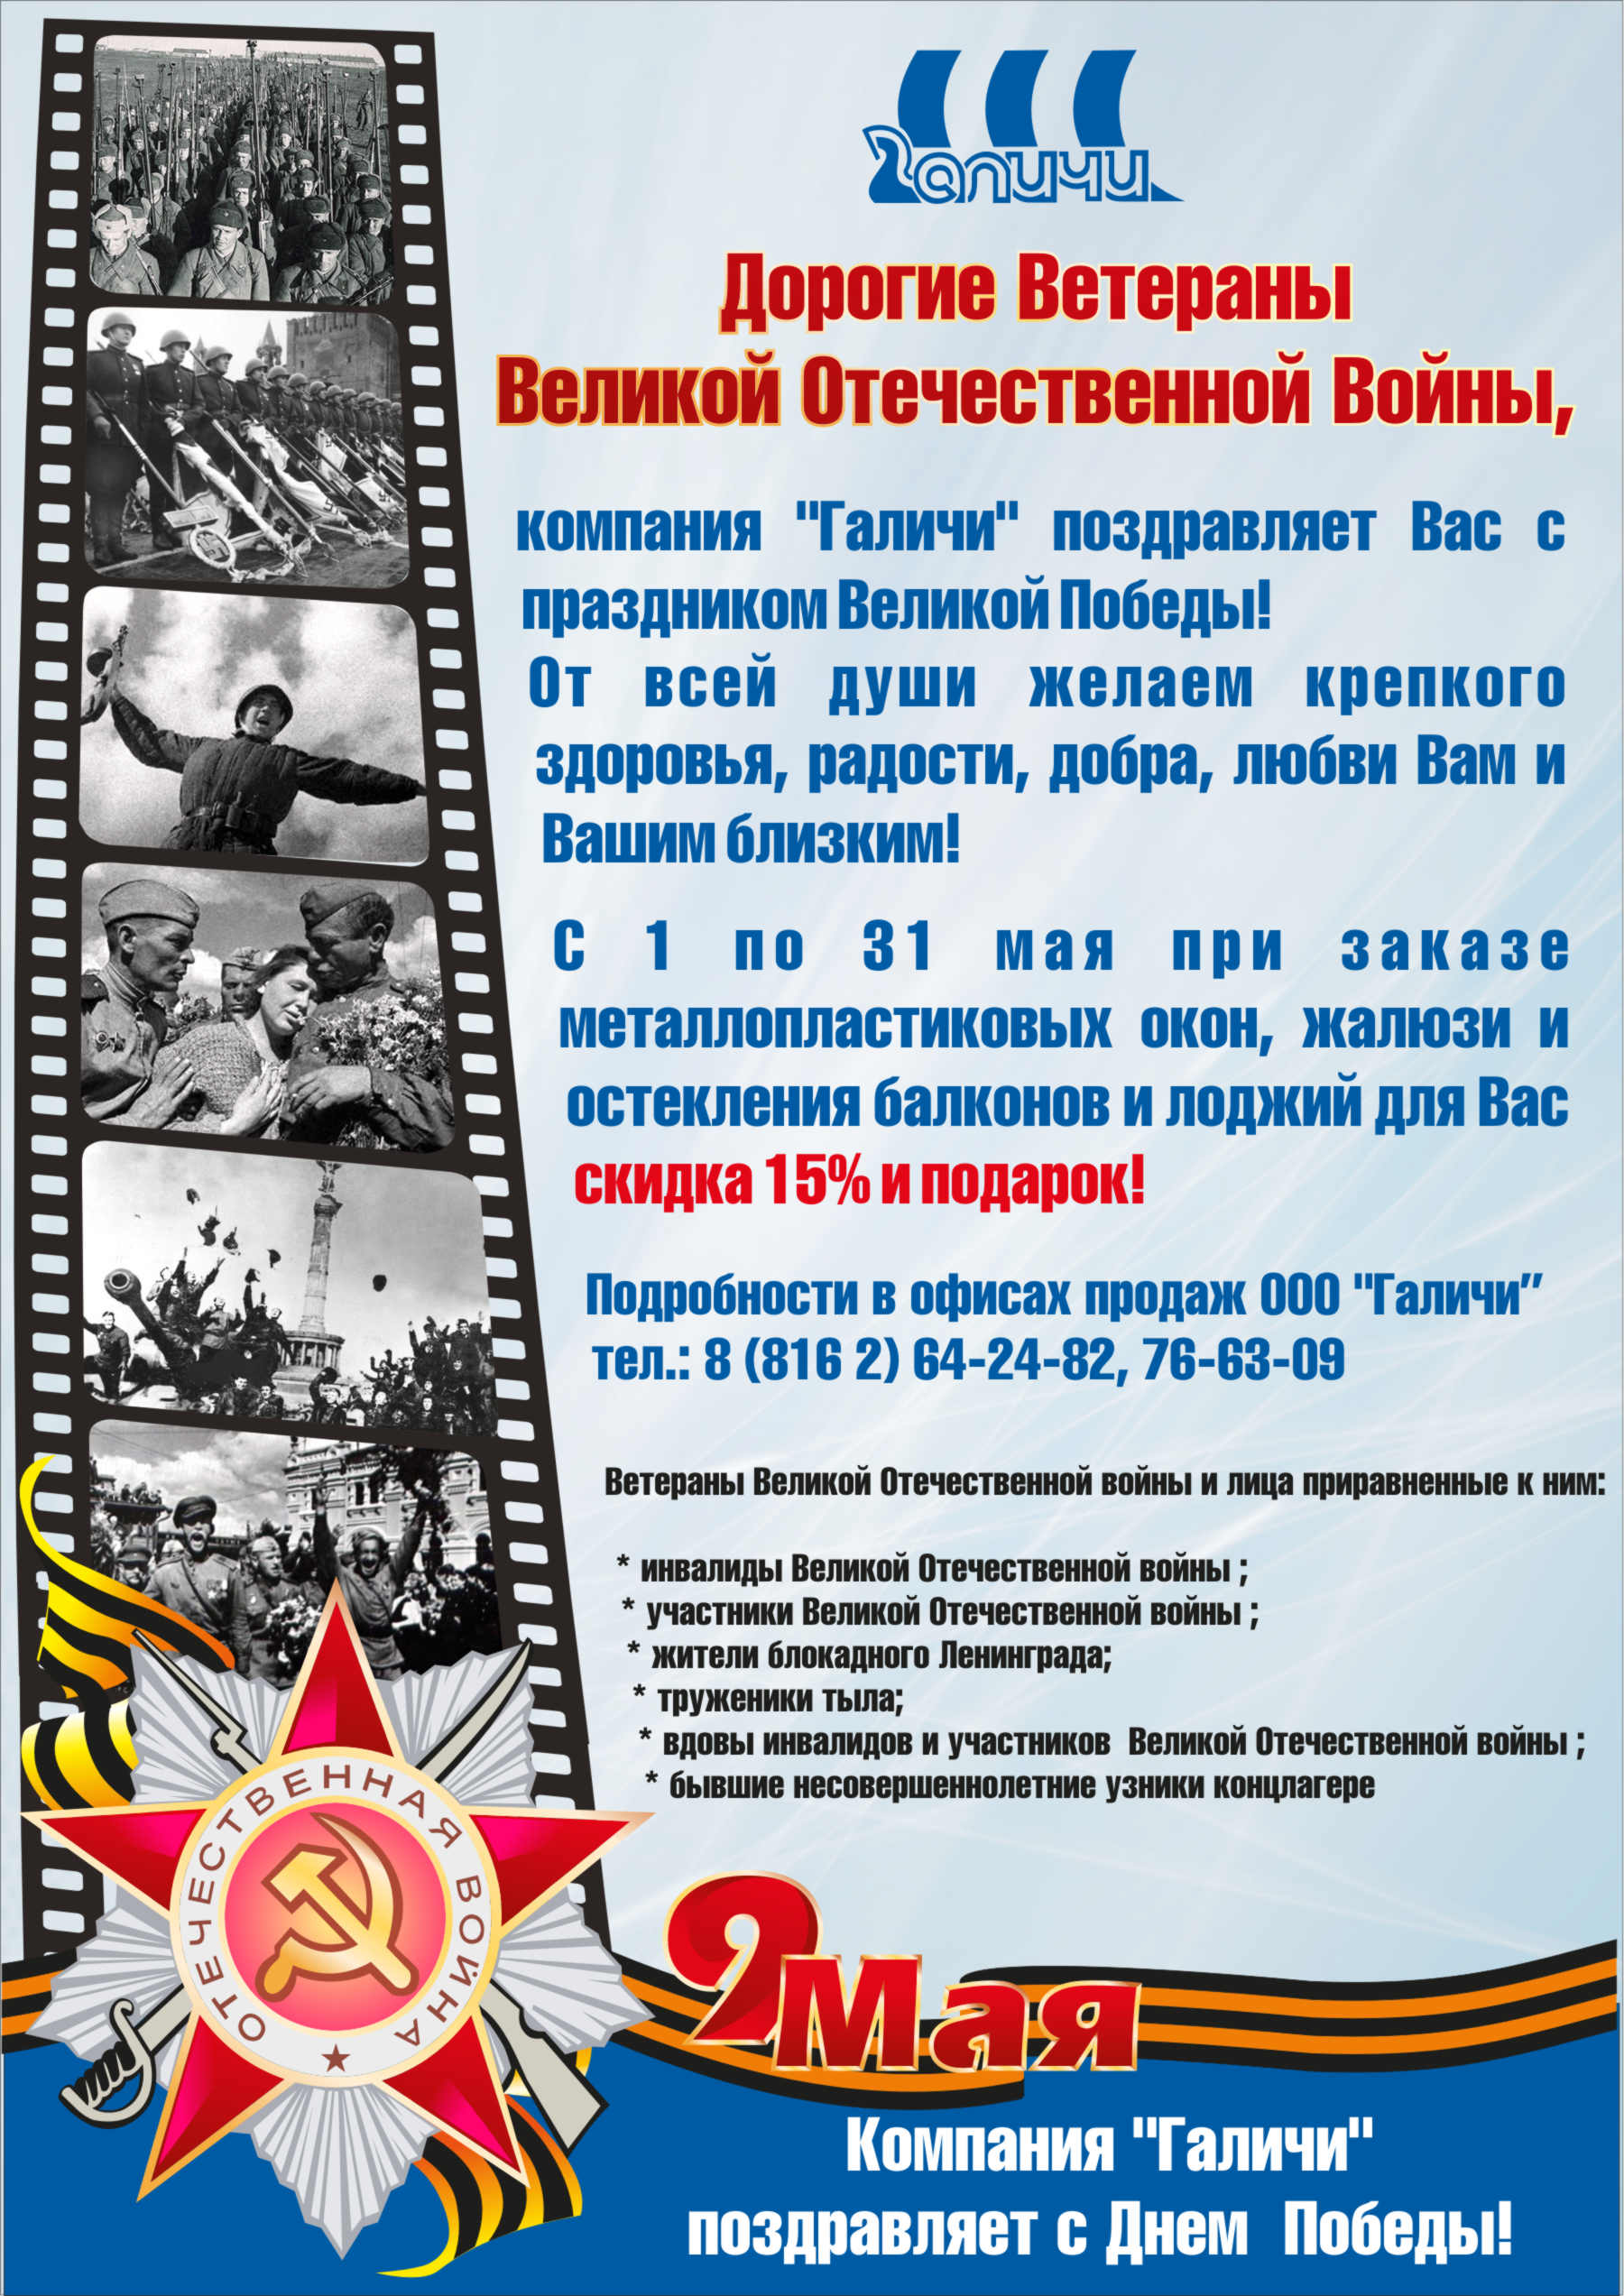 Компания «Галичи» поздравляет Ветеранов Великой Отечественной Войны с праздником Великой Победы!